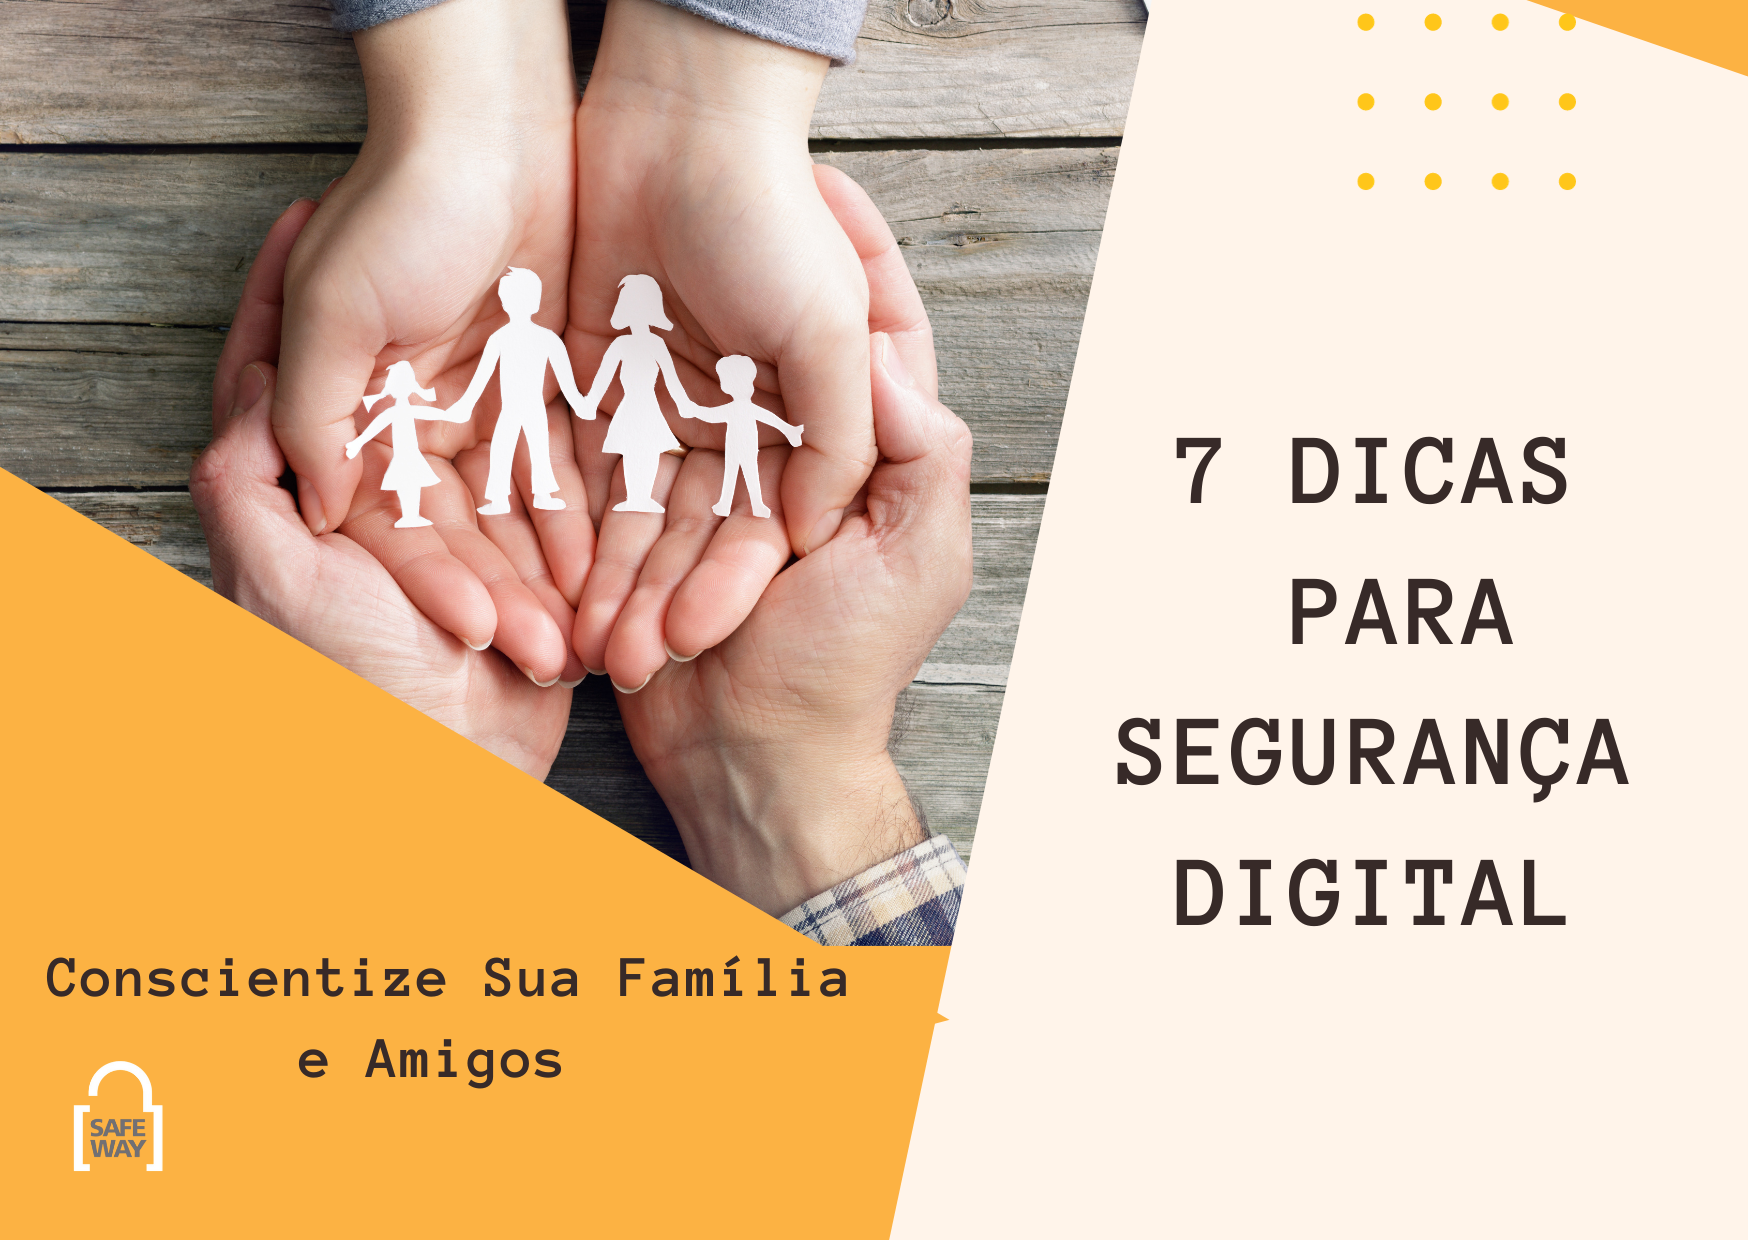 7 Dicas para Segurança Digital: Conscientize sua família e amigos